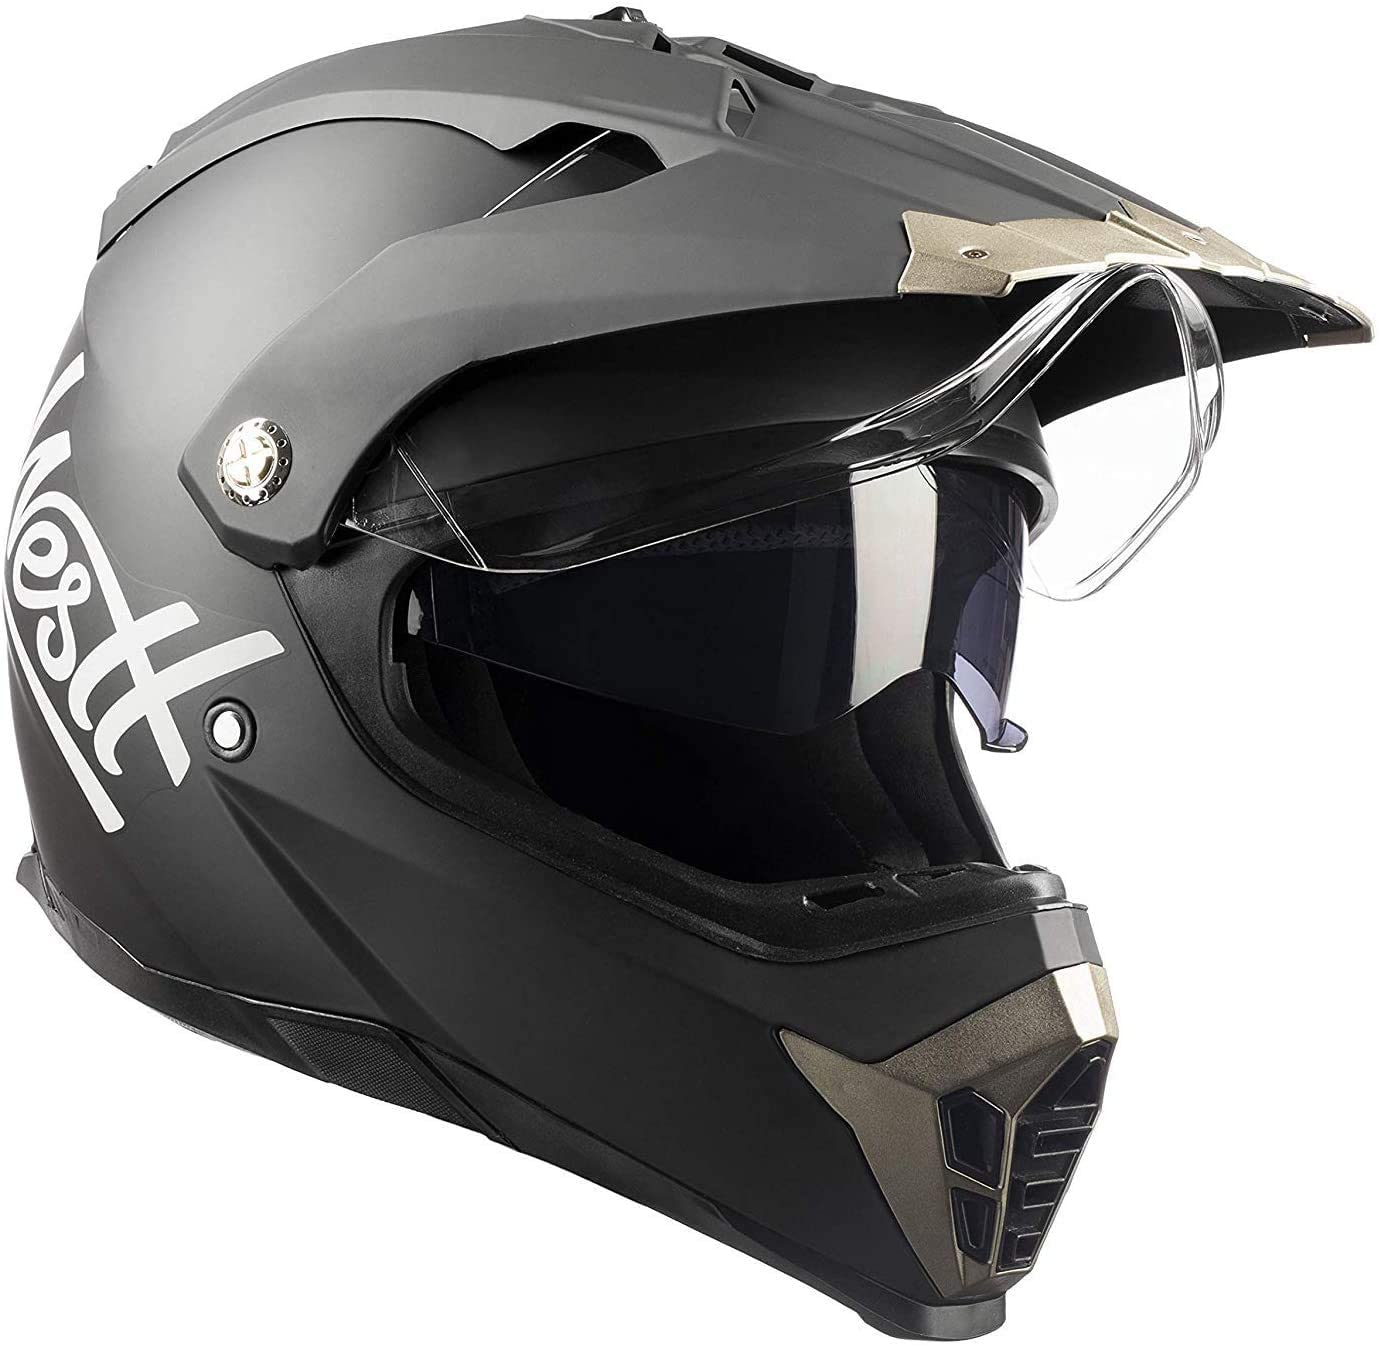 Westt Cross Dirt Bike Helmet - Matt Black Motocross Helmet Dual Visor - DOT Motorcycle Helmet for Adults on ATV MTB 4 Wheeler Snowmobile Off Road Men and Women